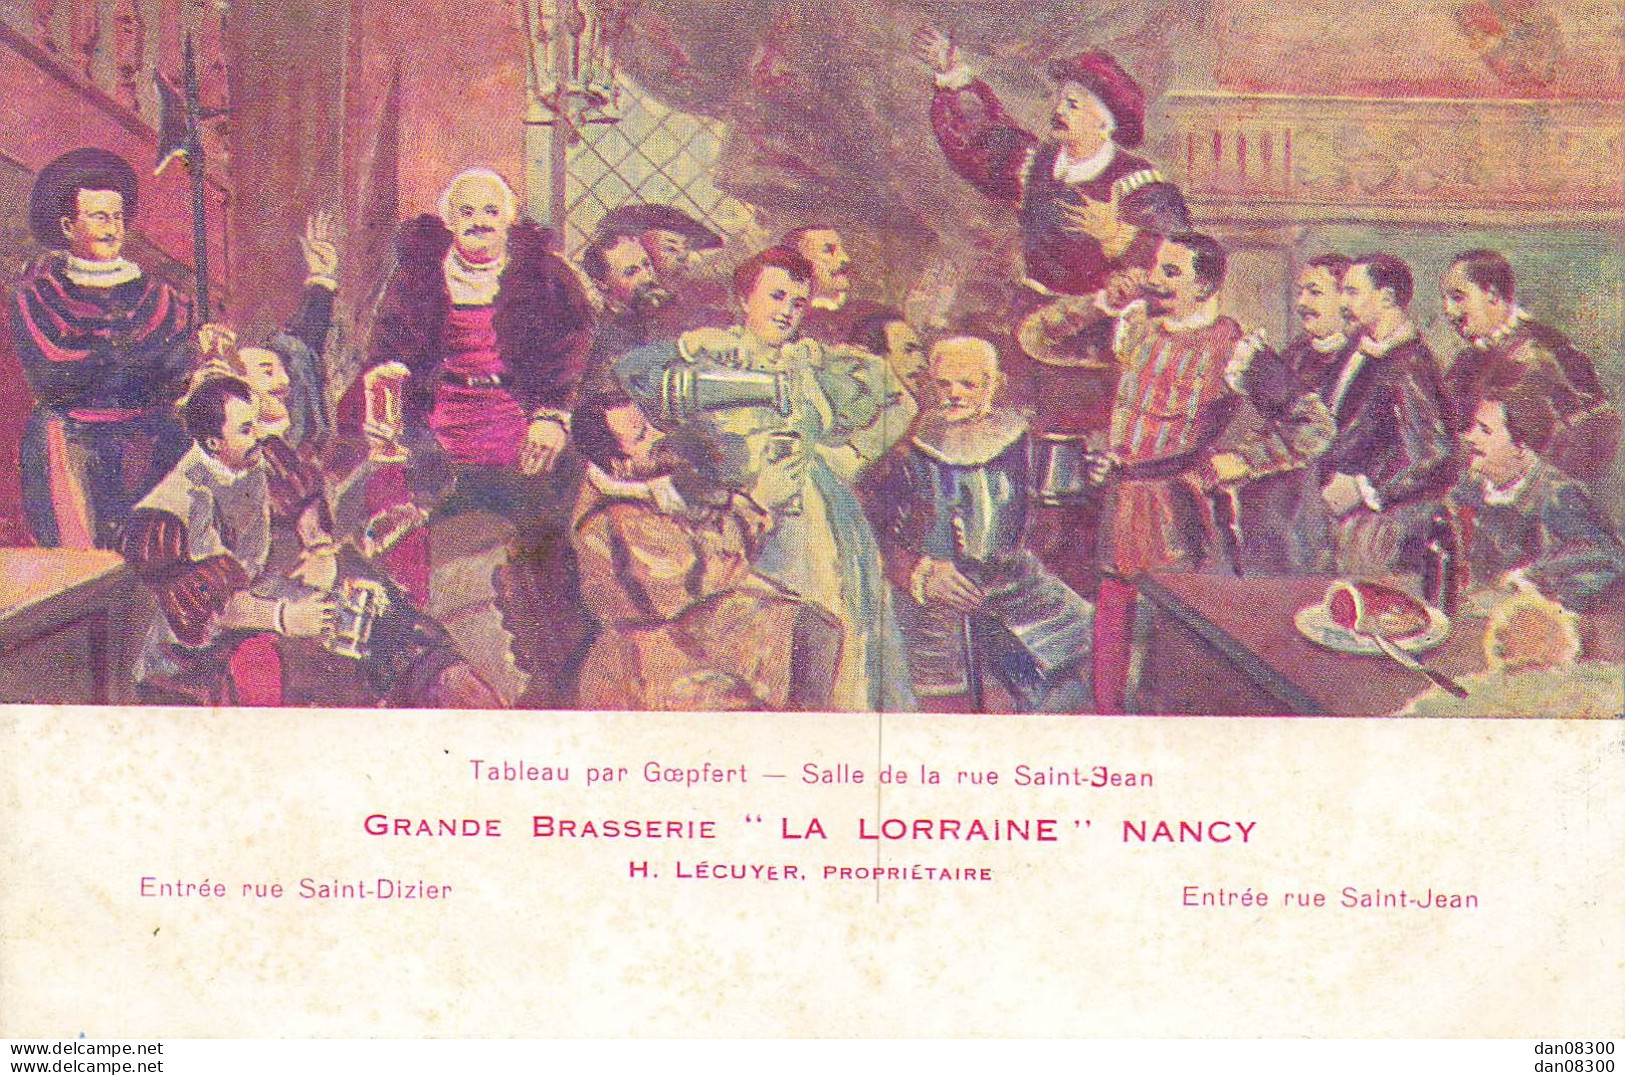 TABLEAU PAR GOEPFERT SALLE DE LA RUE SAINT JEAN GRANDE BRASSERIE LA LORRAINE NANCY - Pintura & Cuadros